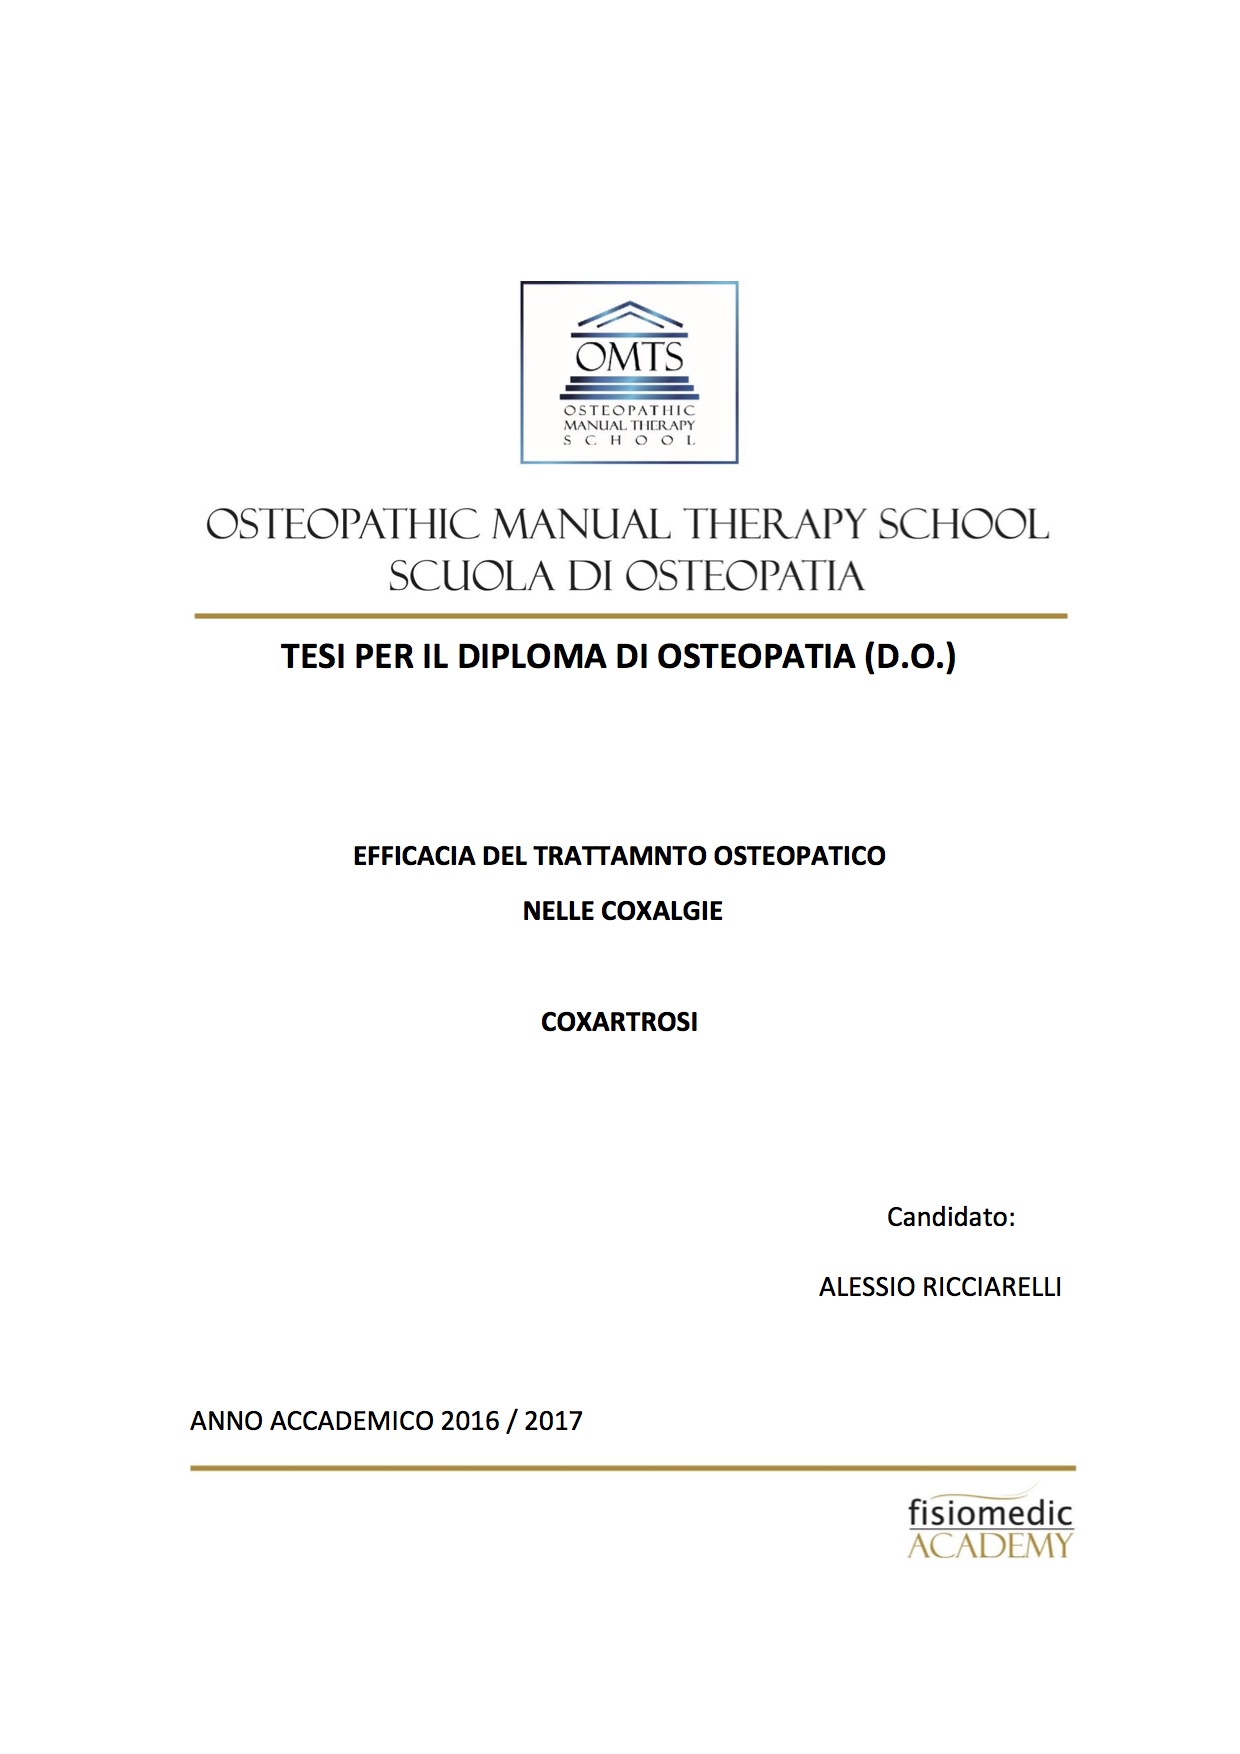 Alessio Ricciarelli Tesi Diploma Osteopatia 2017